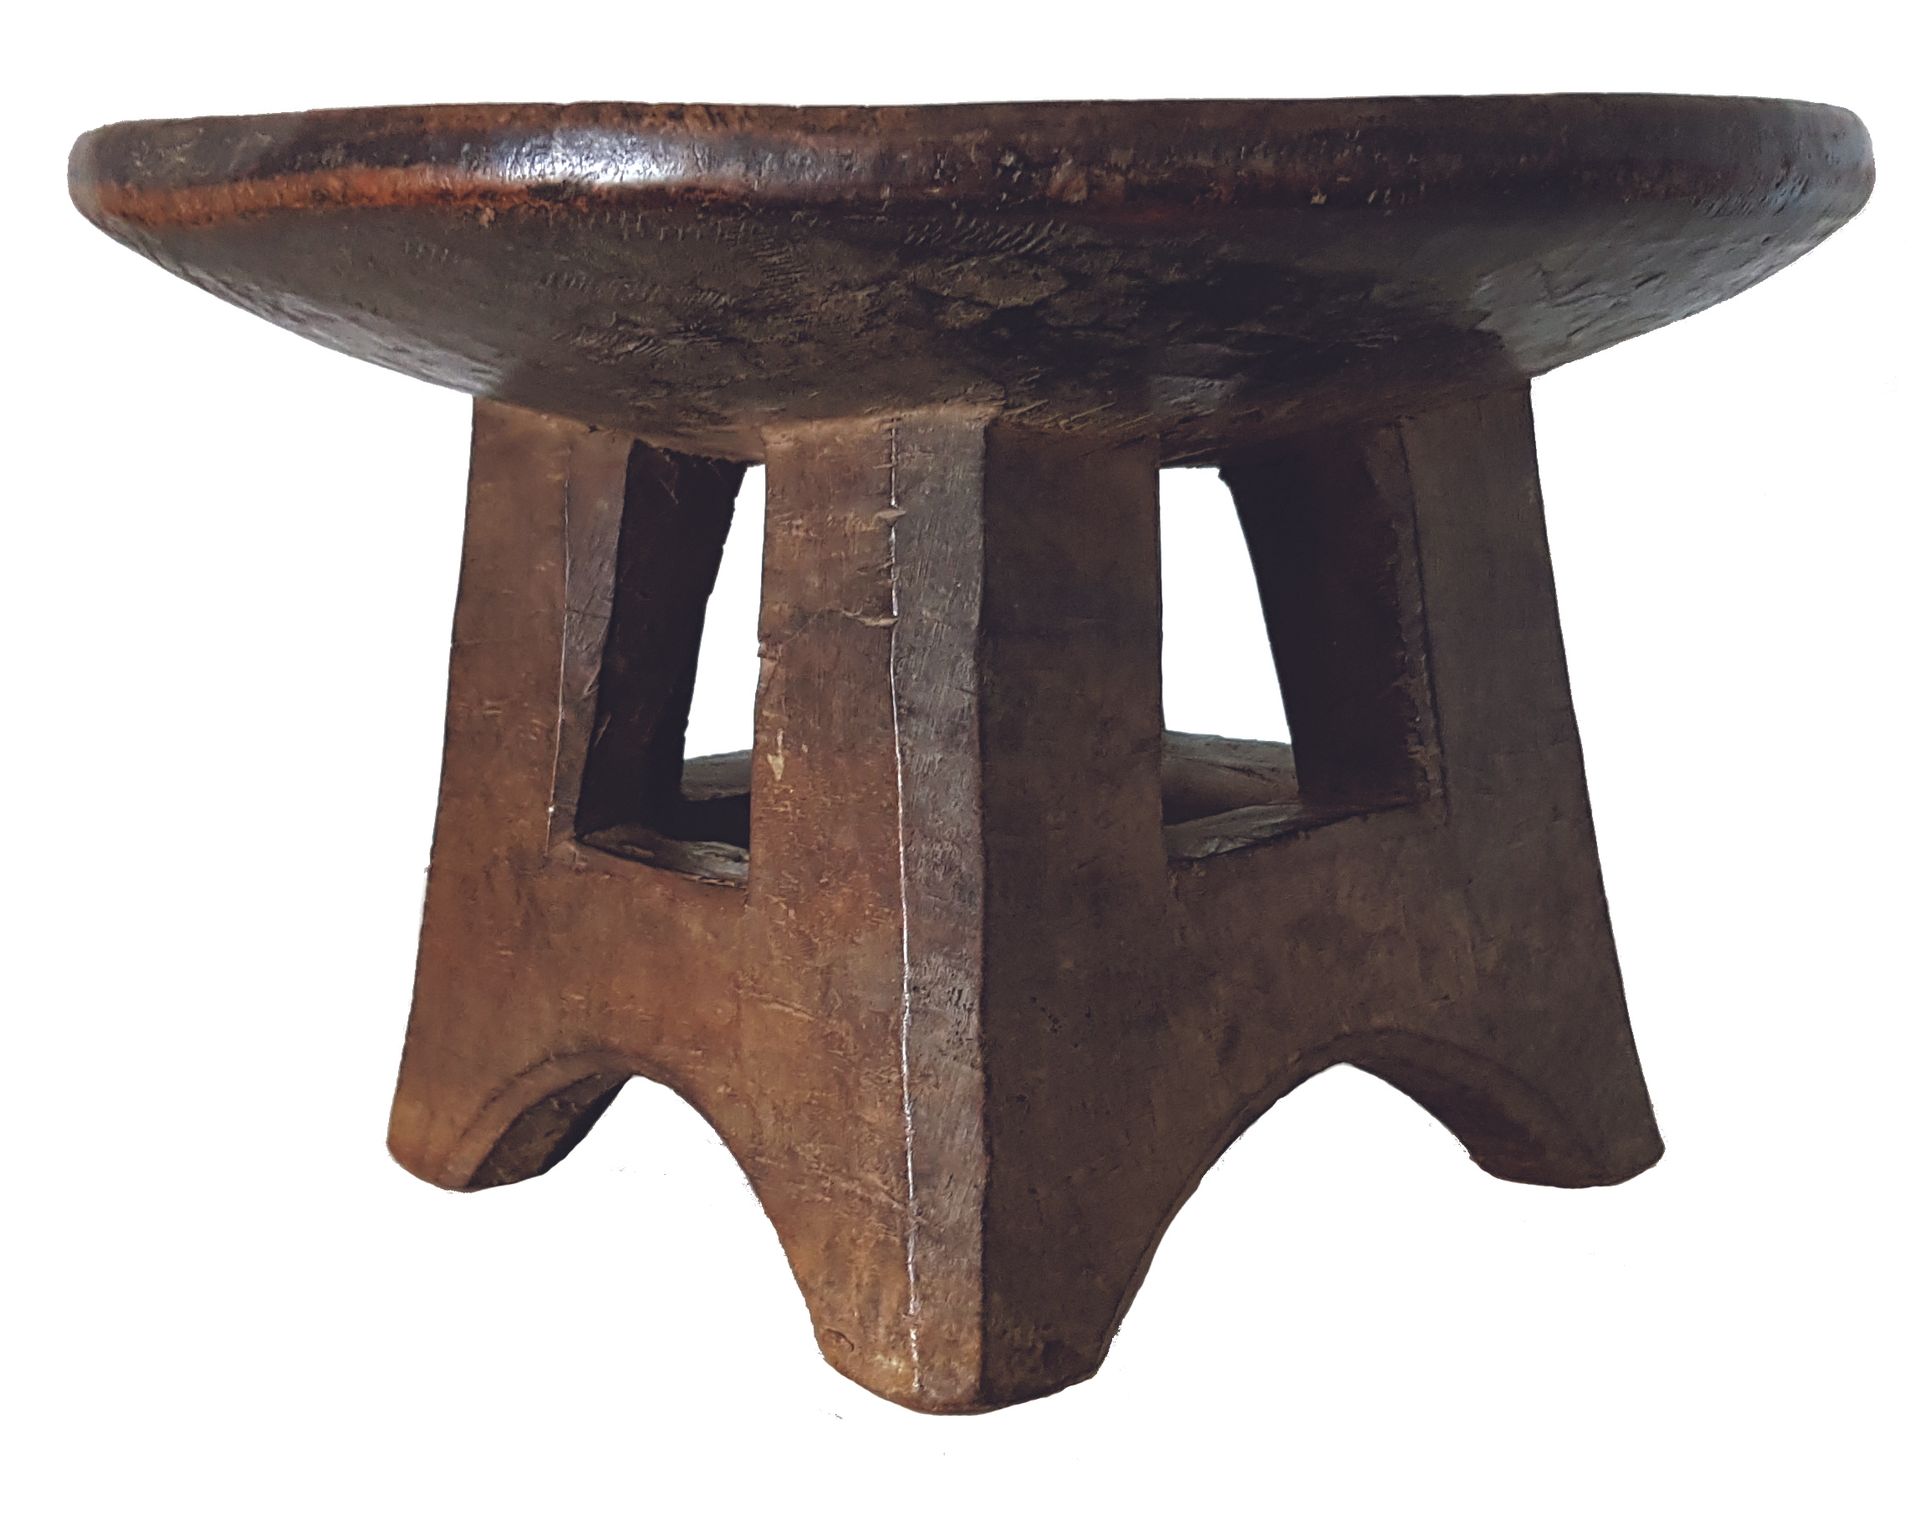 Siège TOMA 
Die runde Sitzfläche ruht auf einer durchbrochenen Basis. Holz mit g&hellip;